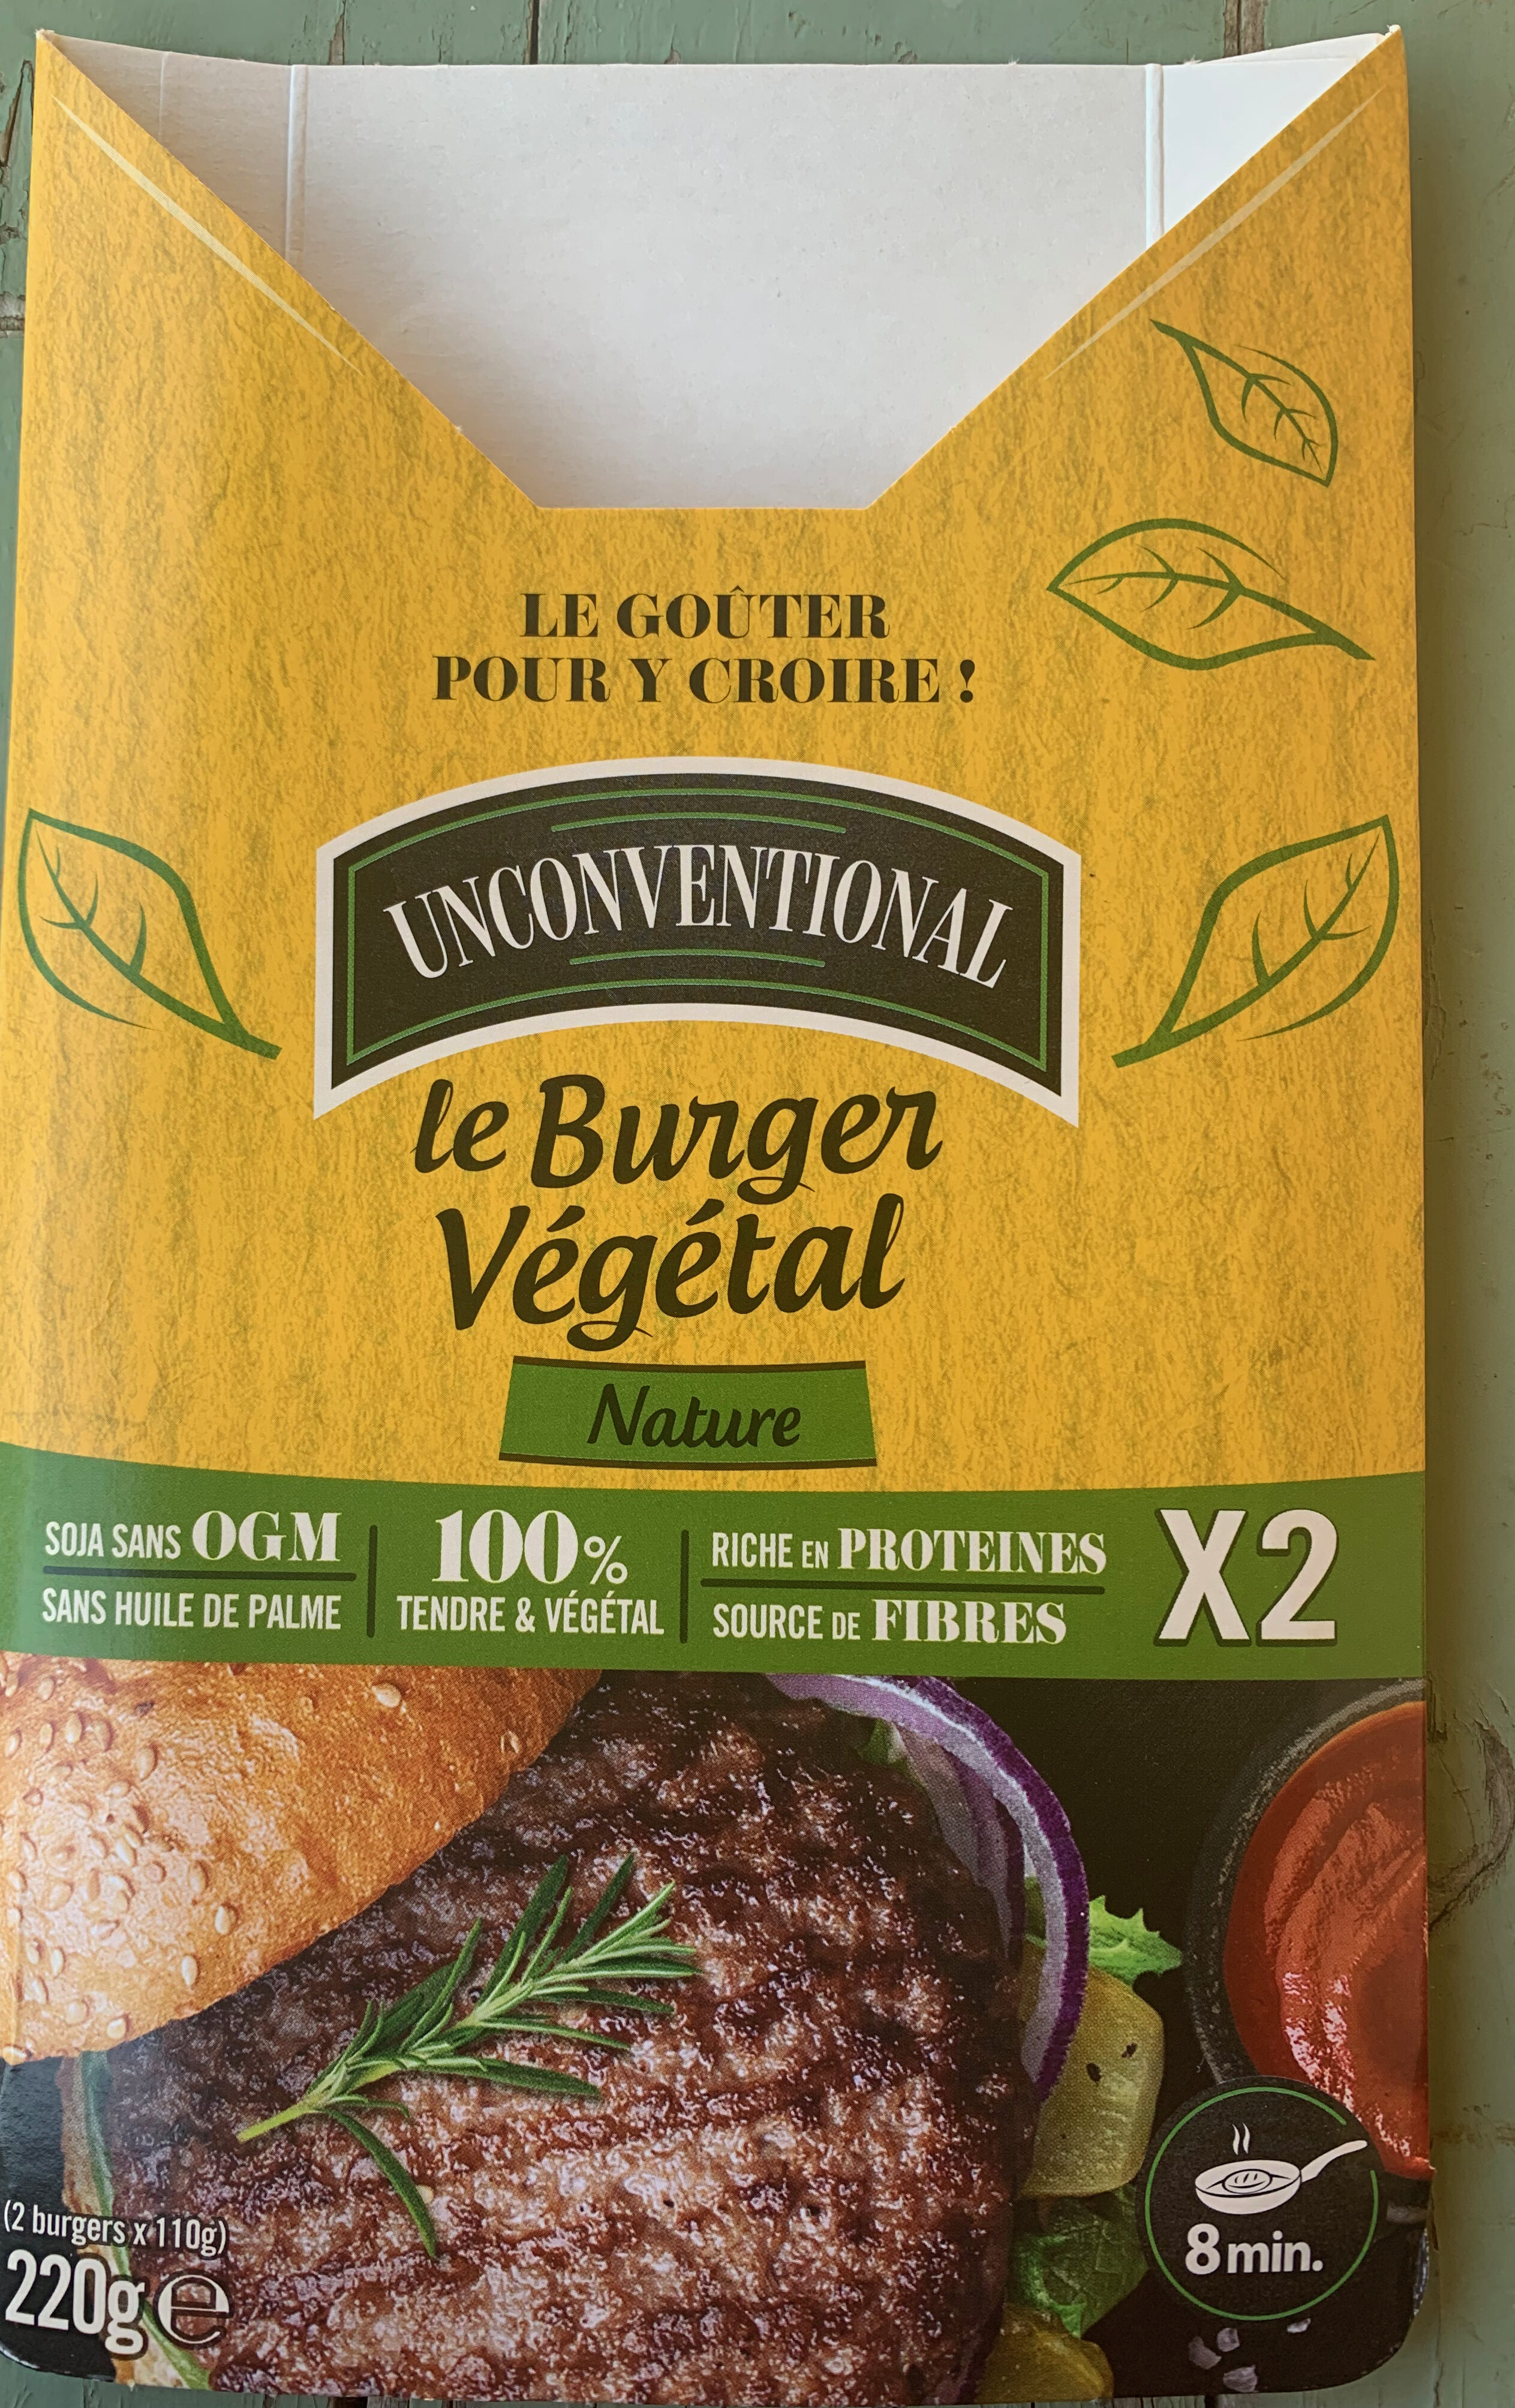 Le burger végétal - Prodotto - fr